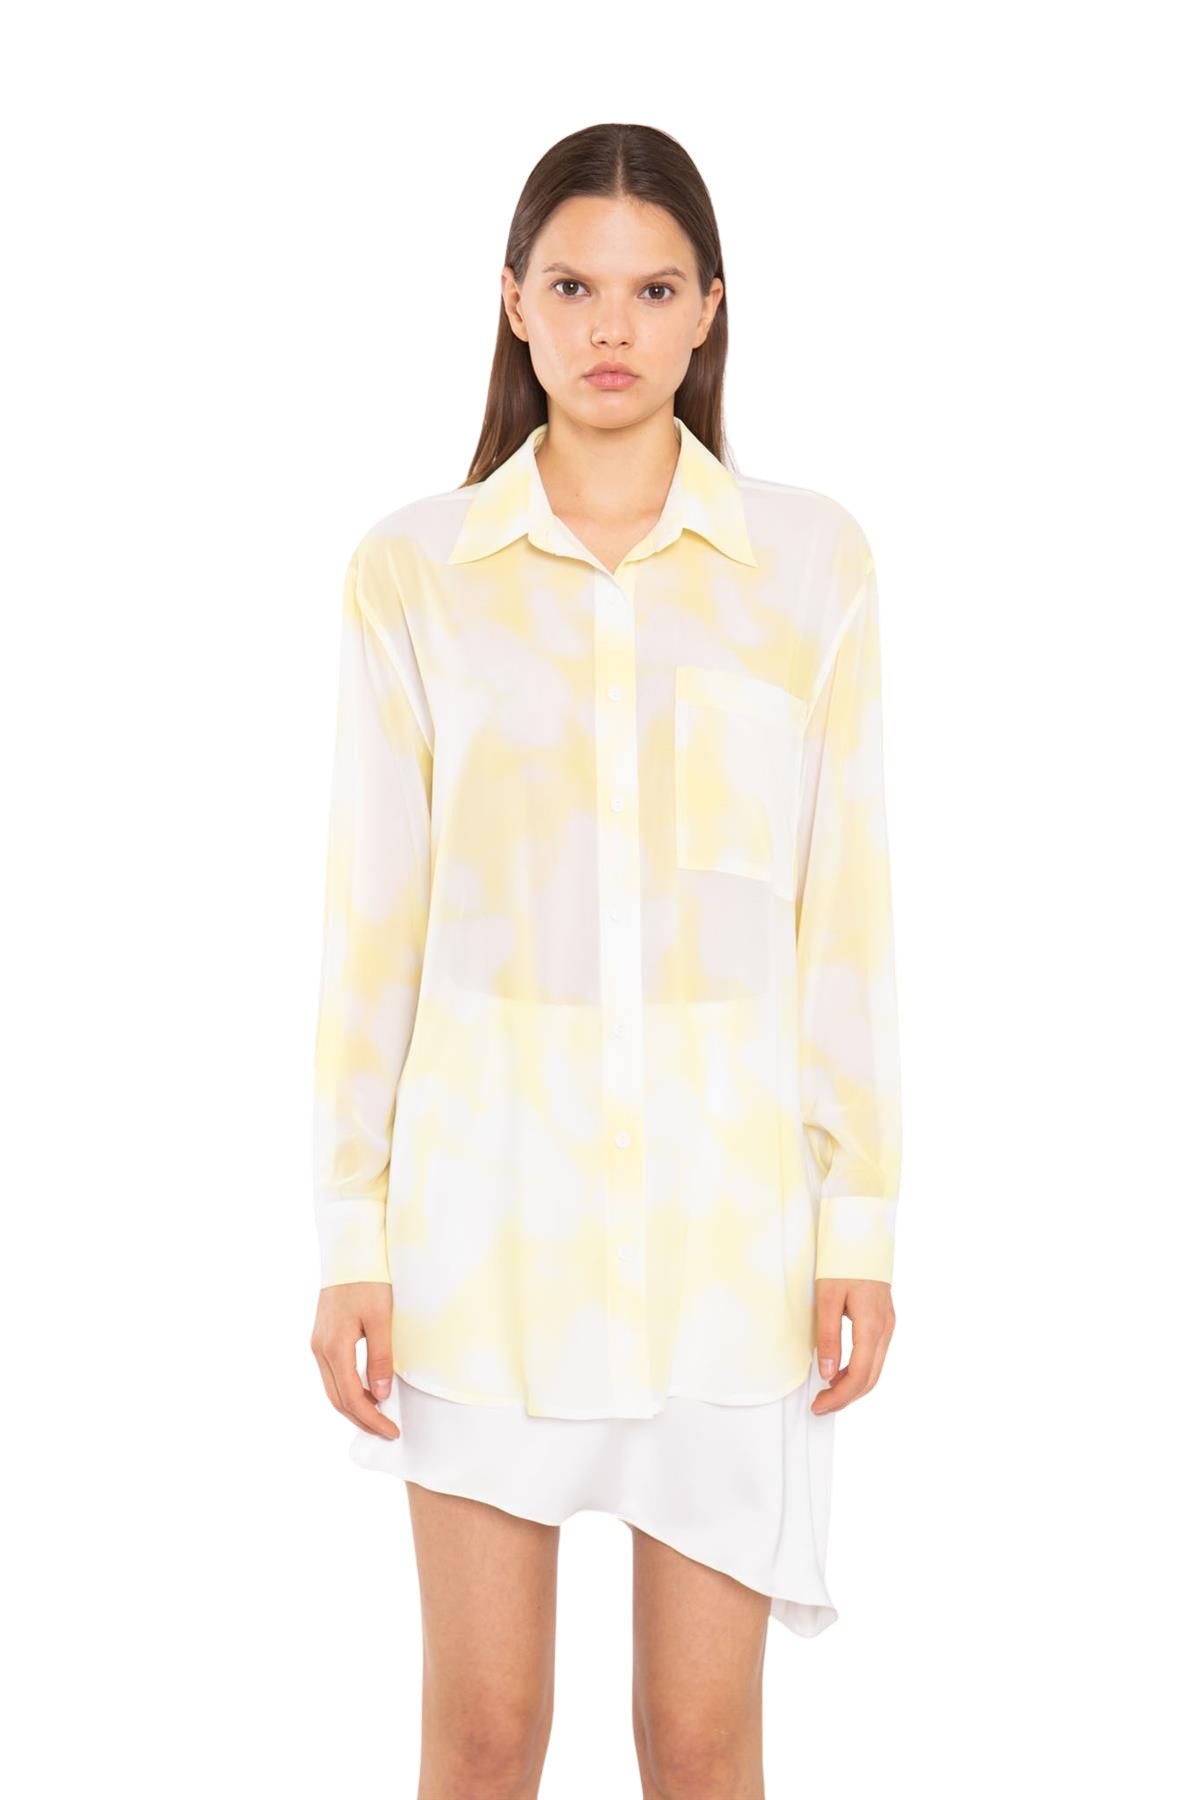 Yellow Print-Chiffon Button Down Classic-Shirt